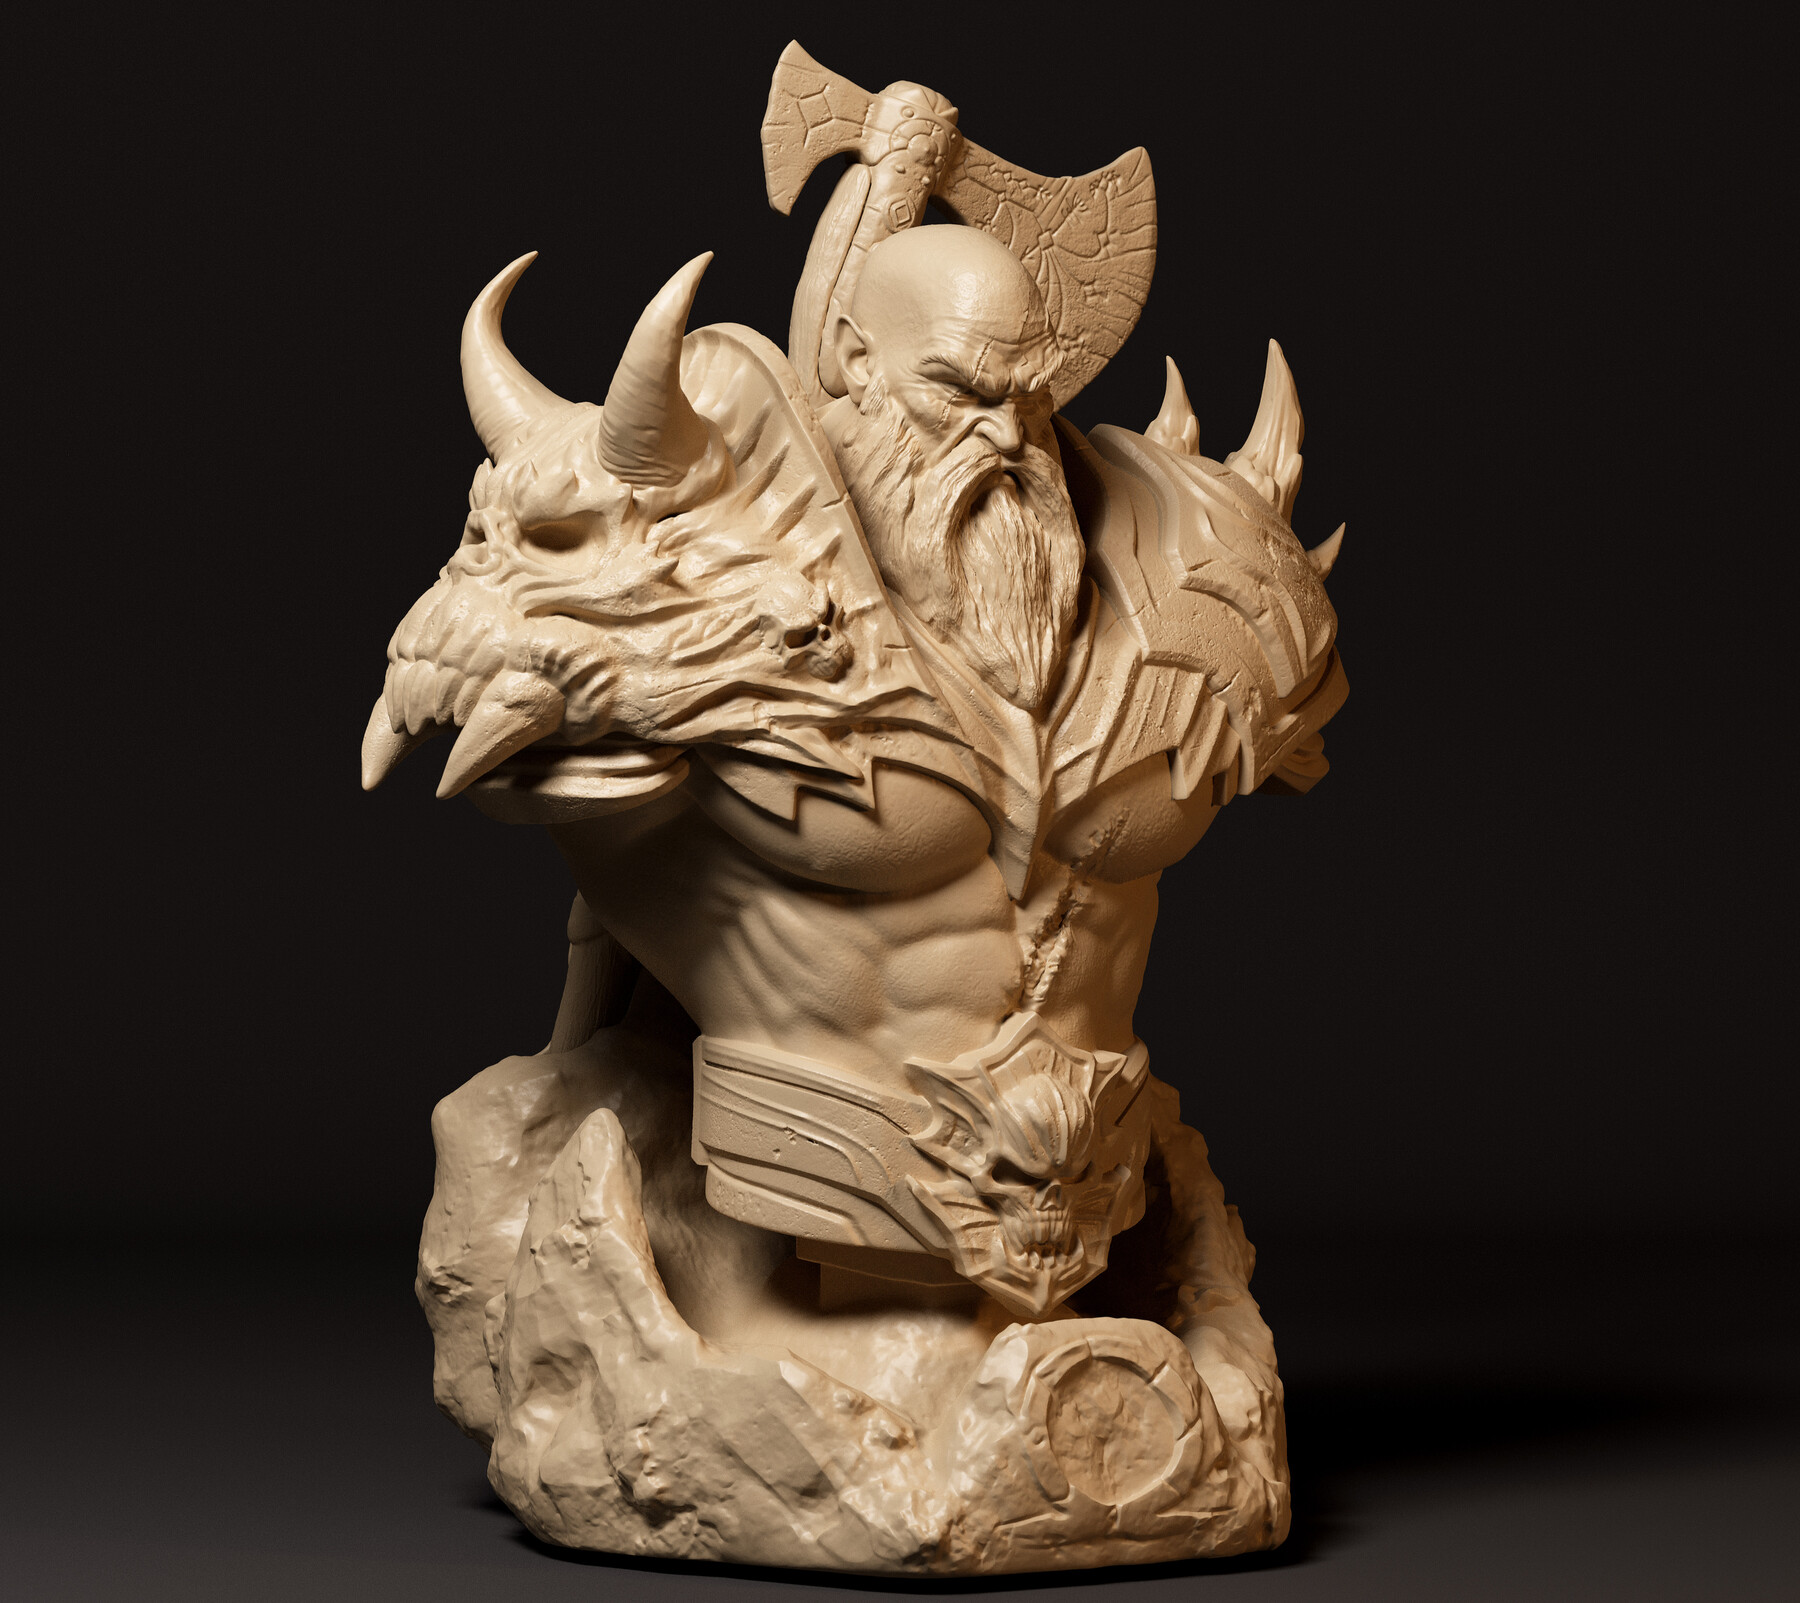 Kratos God of war and Bust - STL 3D print files